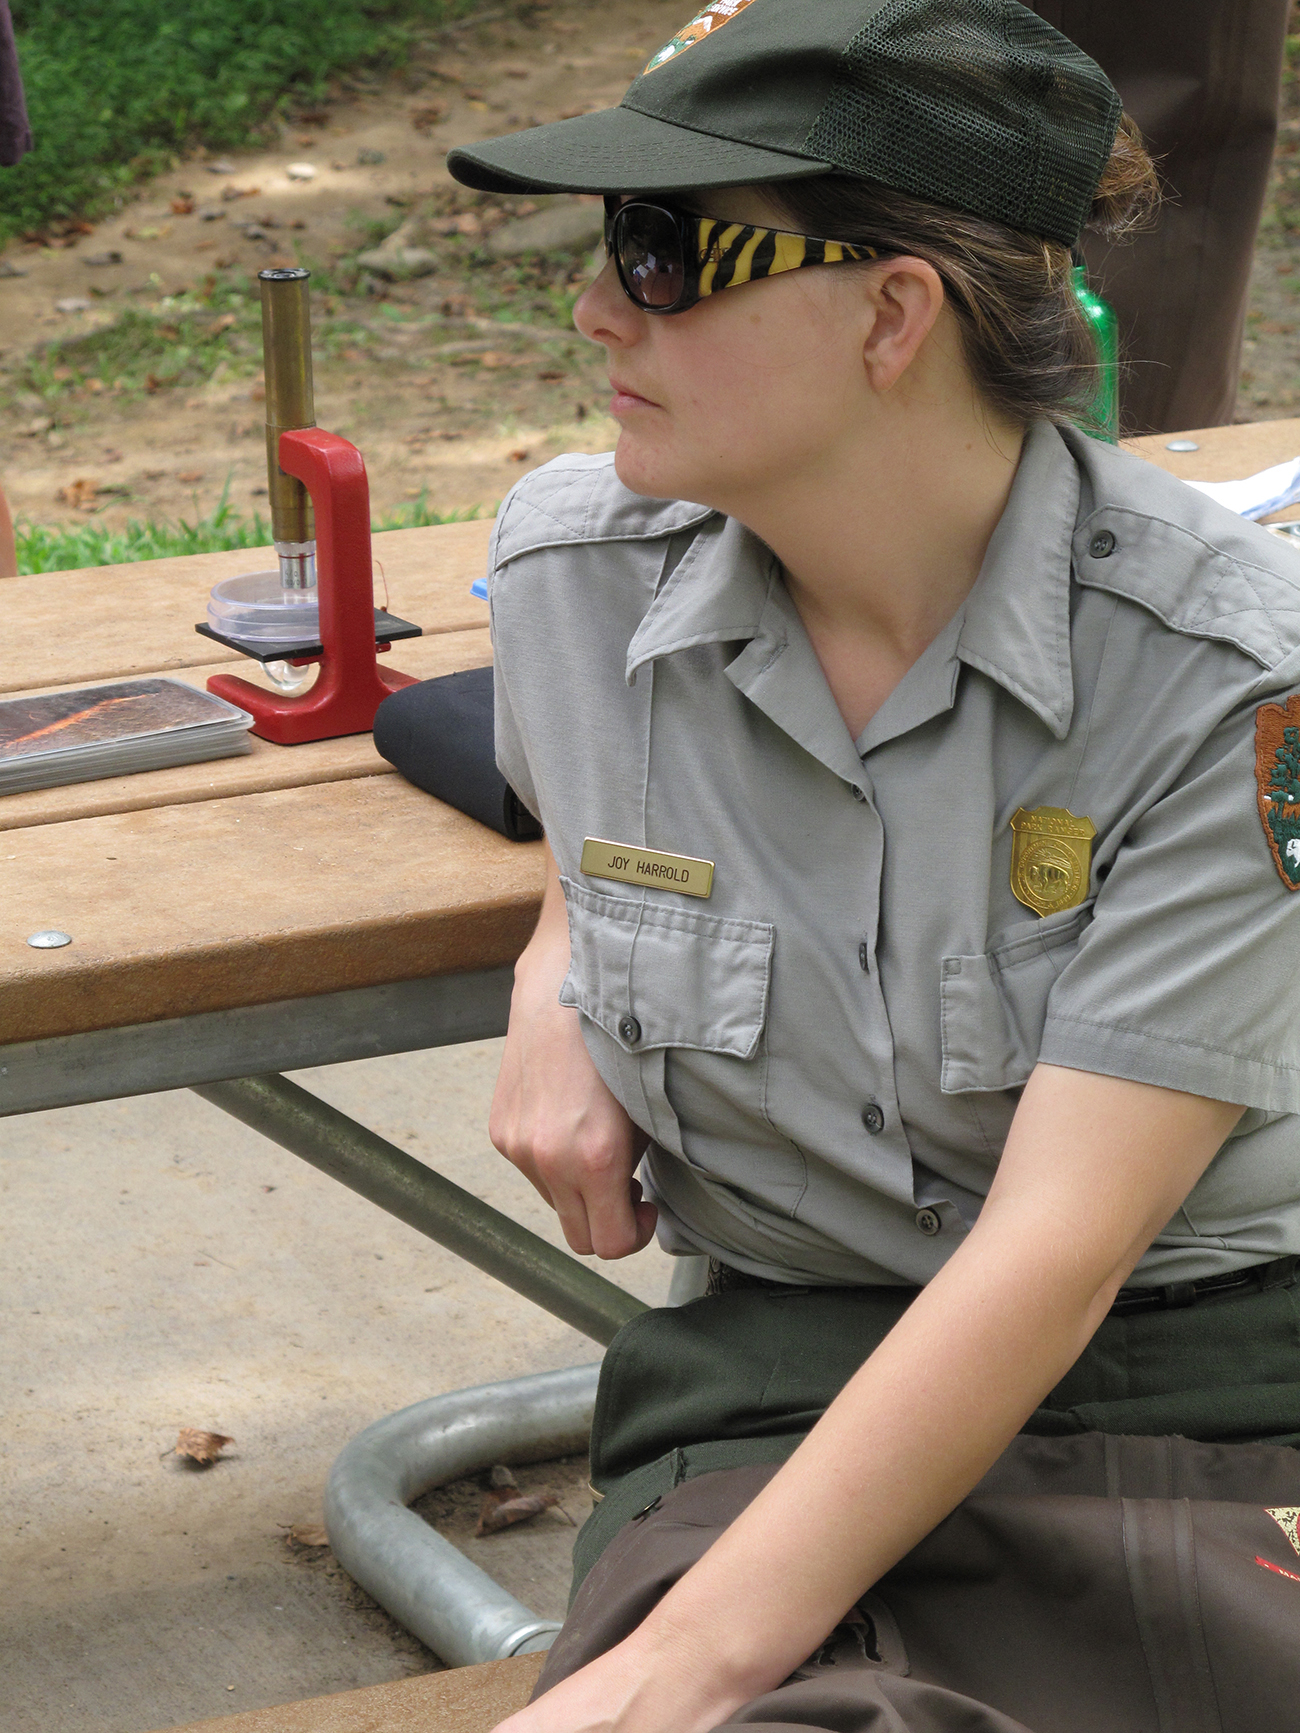 Un garde forestier, vêtu d'un uniforme et d'un insigne officiels, est assis à une table de pique-nique à l'extérieur.